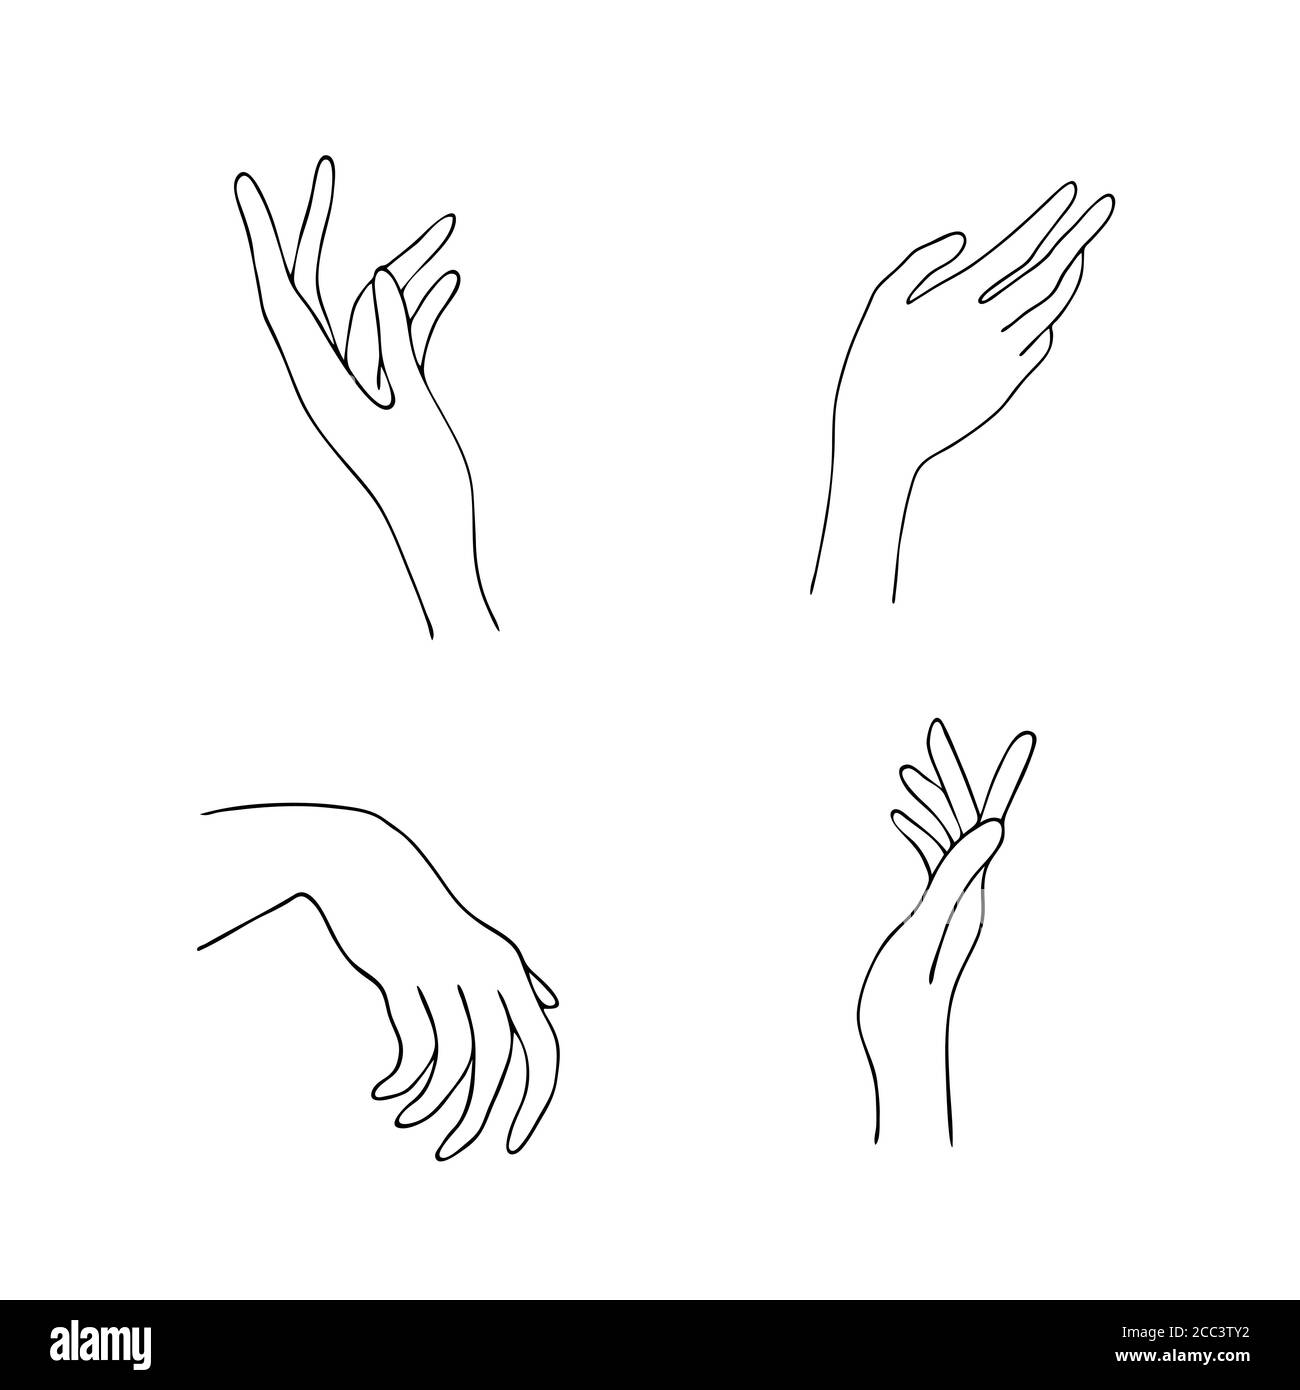 Las mujeres iconos de la mano. Elegantes manos femeninas de diferentes  gestos. Lineart en un estilo moderno y minimalista. Ilustración vectorial.  EPS10 Imagen Vector de stock - Alamy